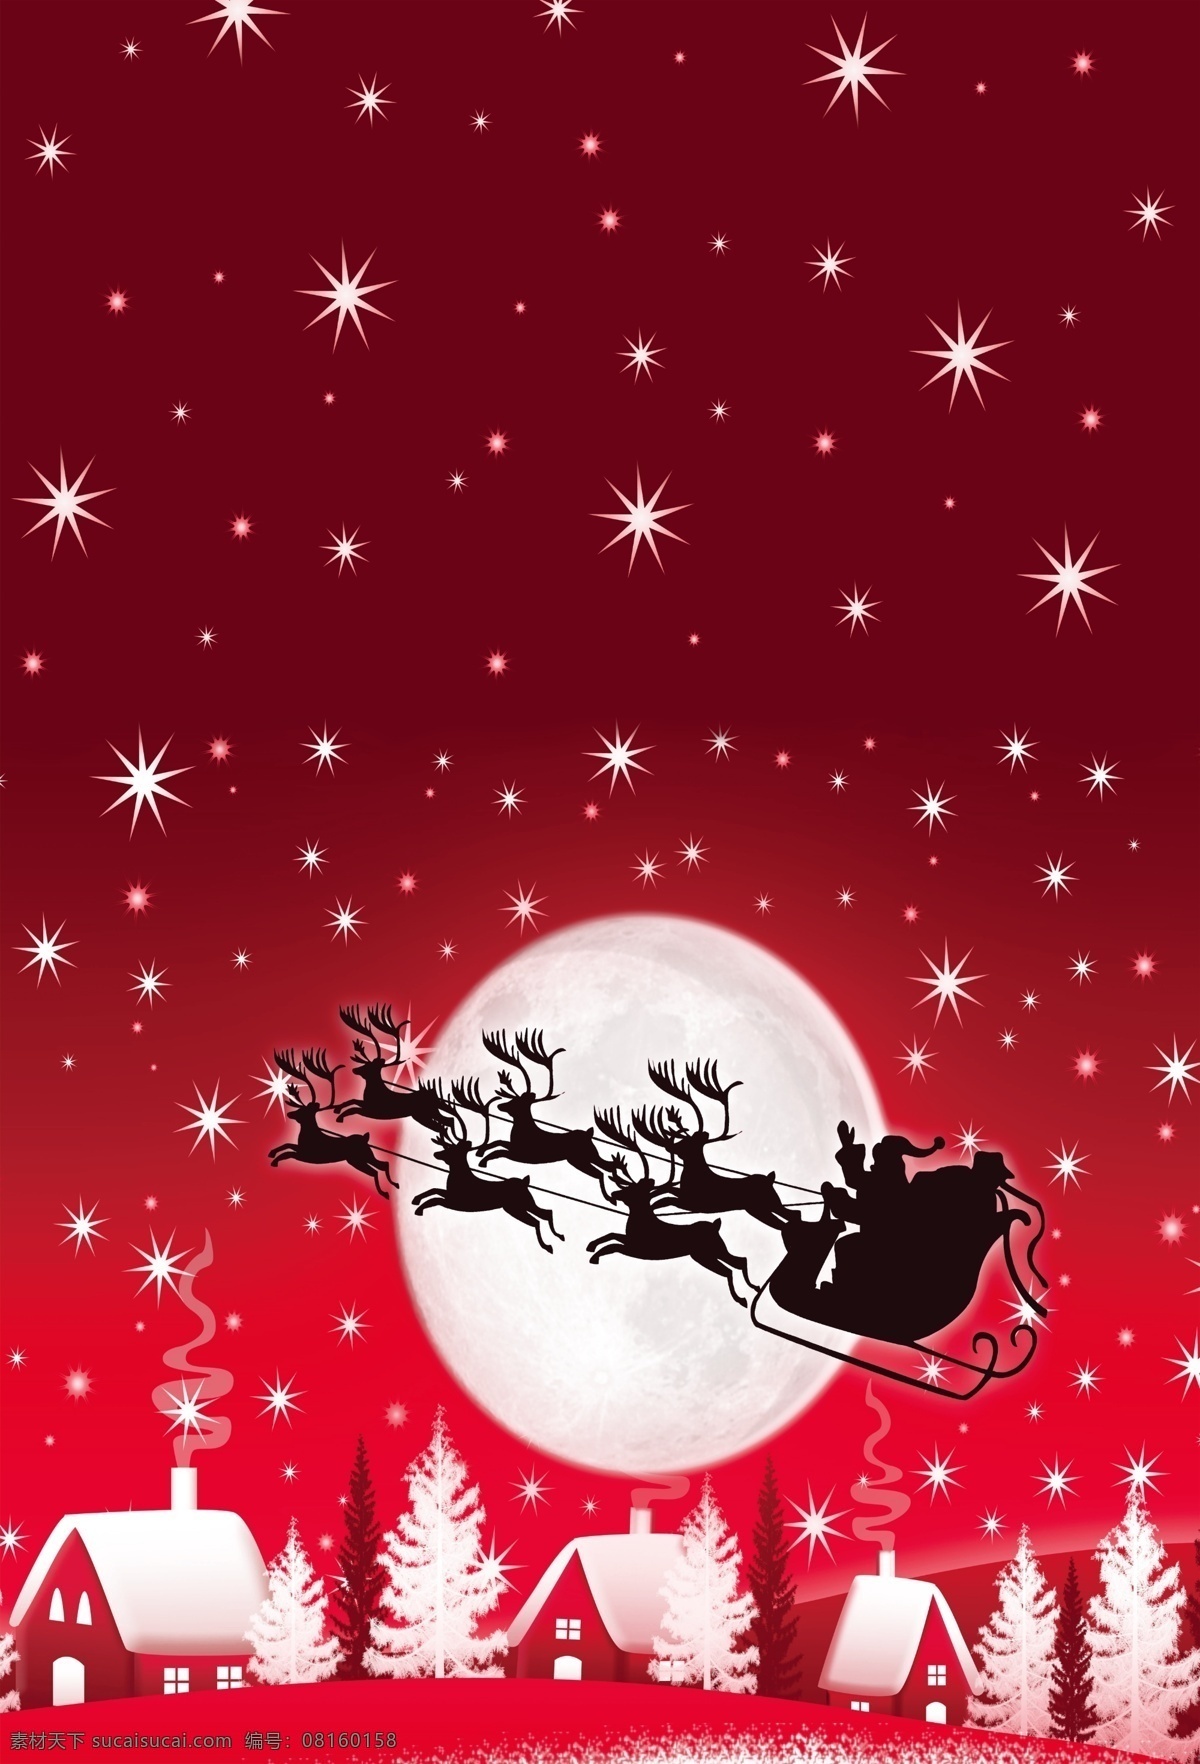 圣诞老人 圣诞节 圣诞节海报 圣诞节图案 圣诞帽子 圣诞节设计 圣诞节背景 圣诞节元素 圣诞星星 水彩圣诞节 水彩圣诞老 圣诞卡片 圣诞节活动 圣诞节狂欢 圣诞礼物 条纹 手绘兔子 小矮人 圣诞小矮人 圣诞铃当 圣诞牧师 雪花 月亮 分层